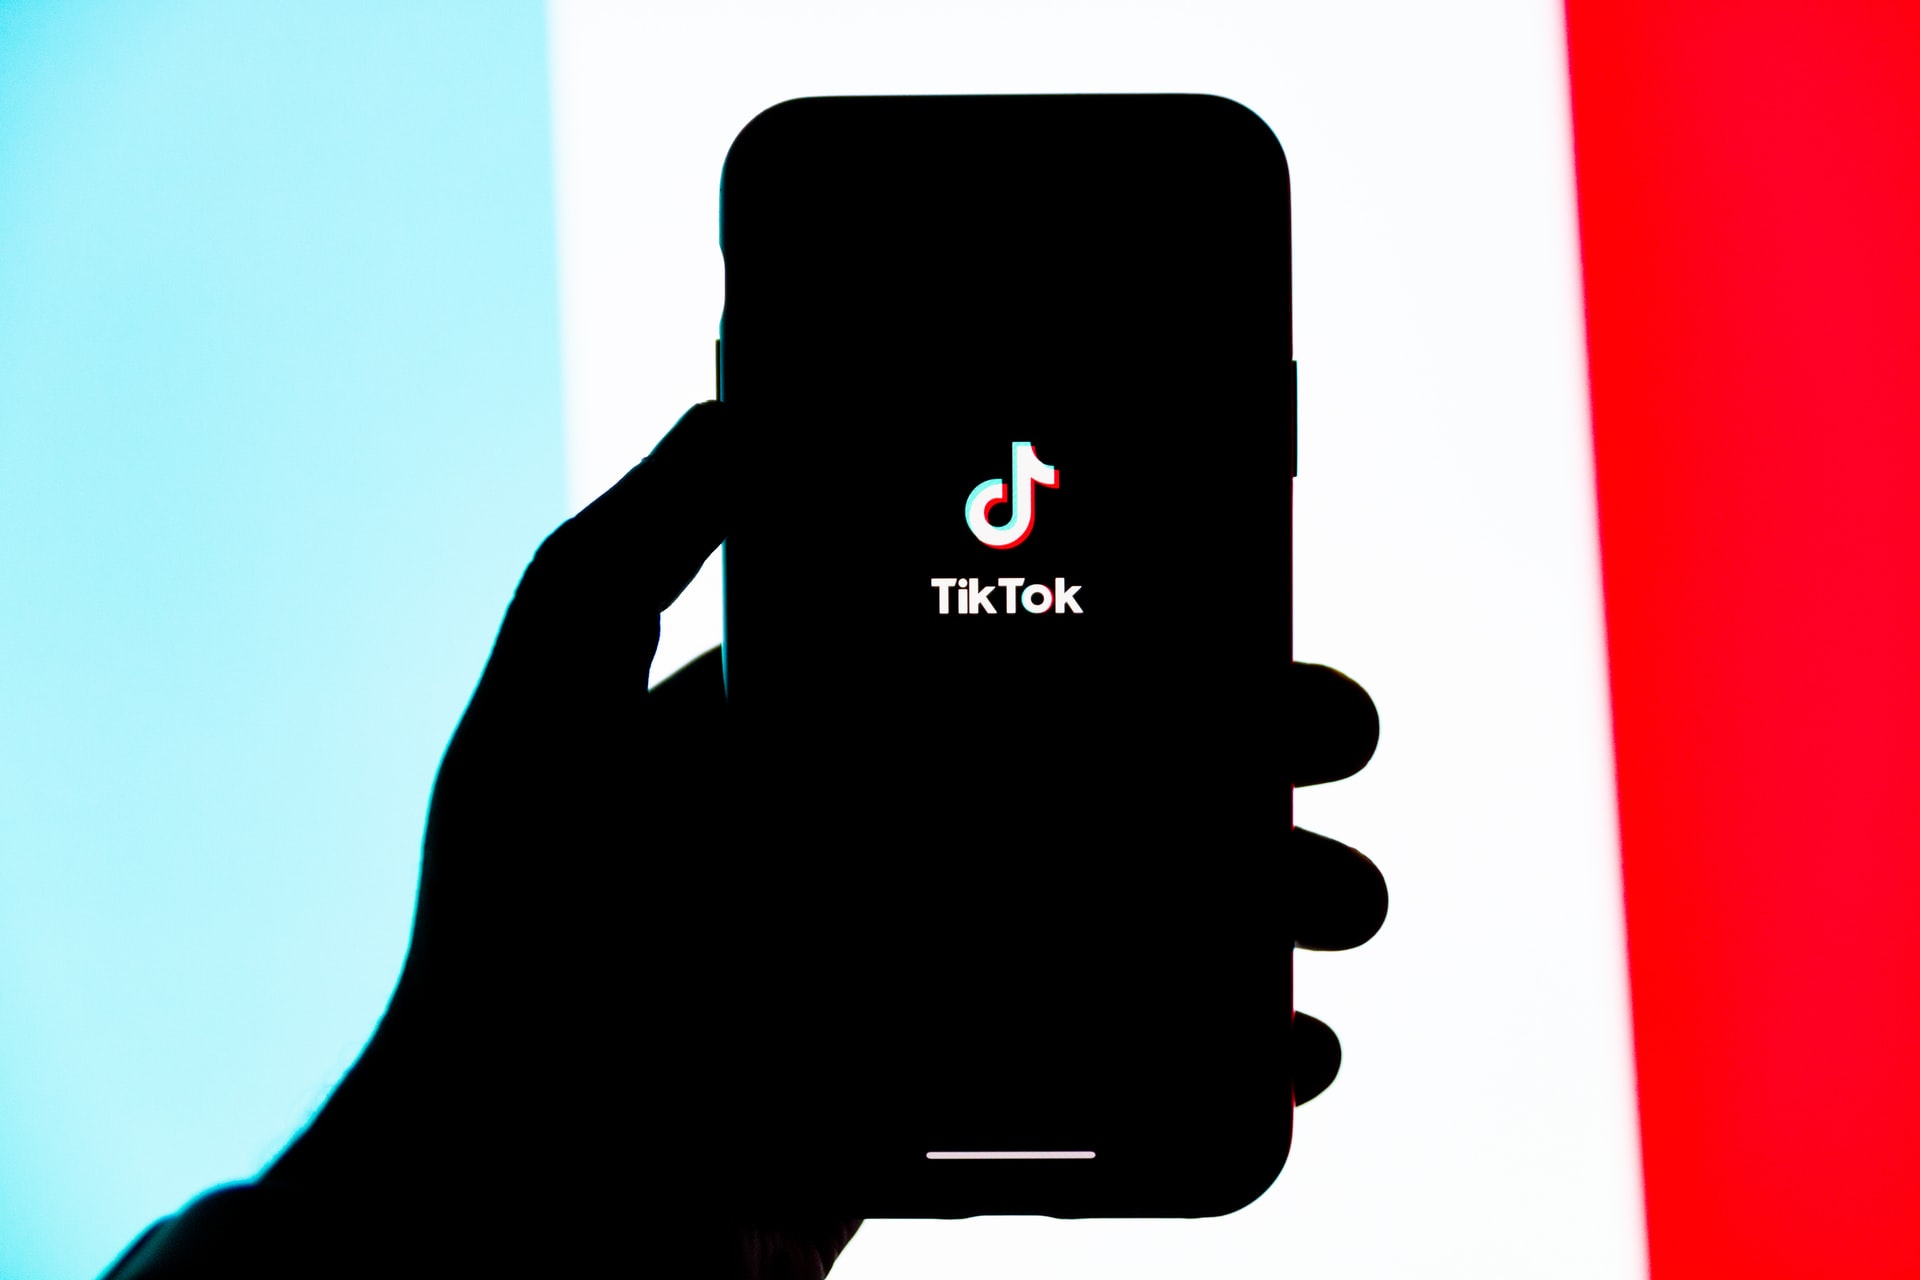 TikTok nu världens mest nedladdade app Tar förstaplatsen från Facebook Messenger